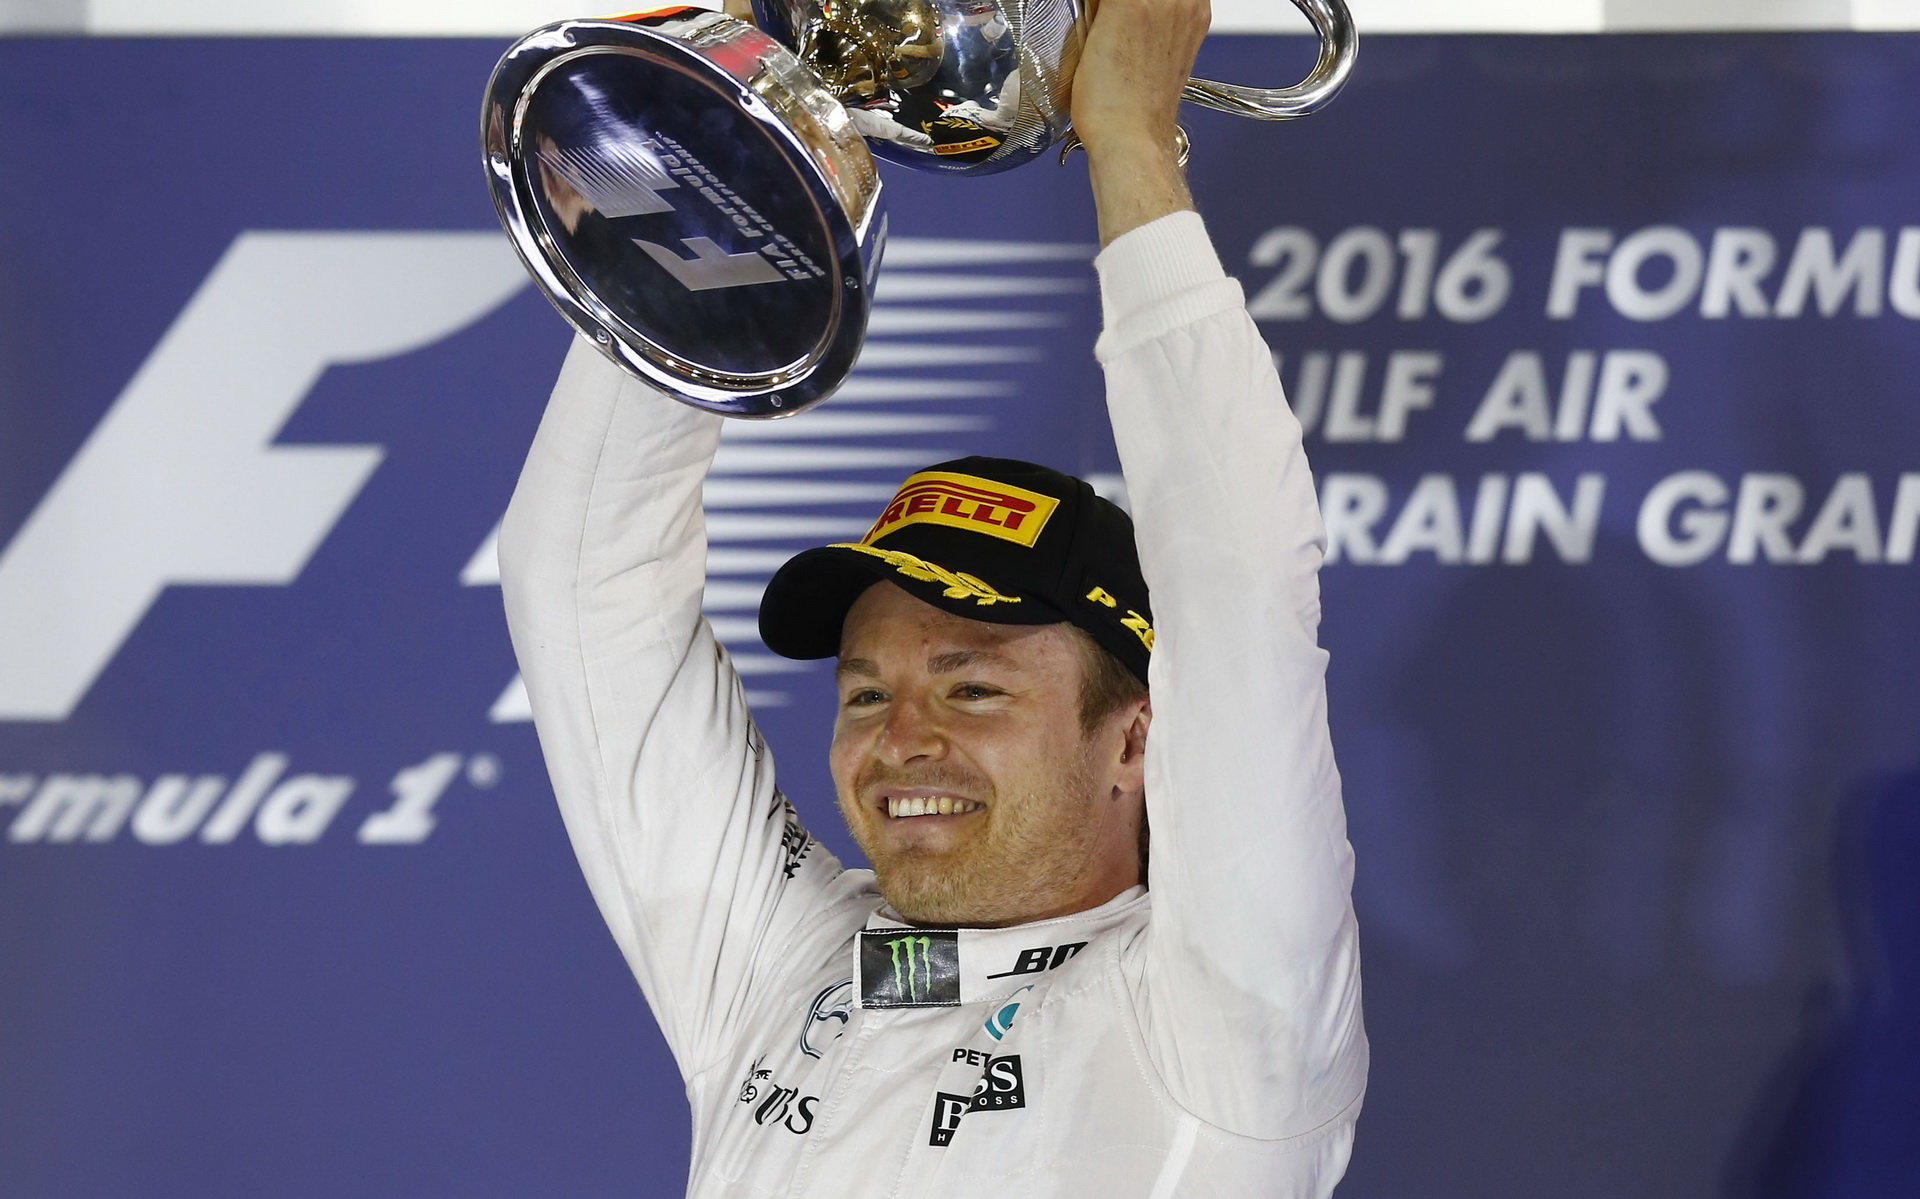 Nico Rosberg na pódiu po závodě v Bahrajnu